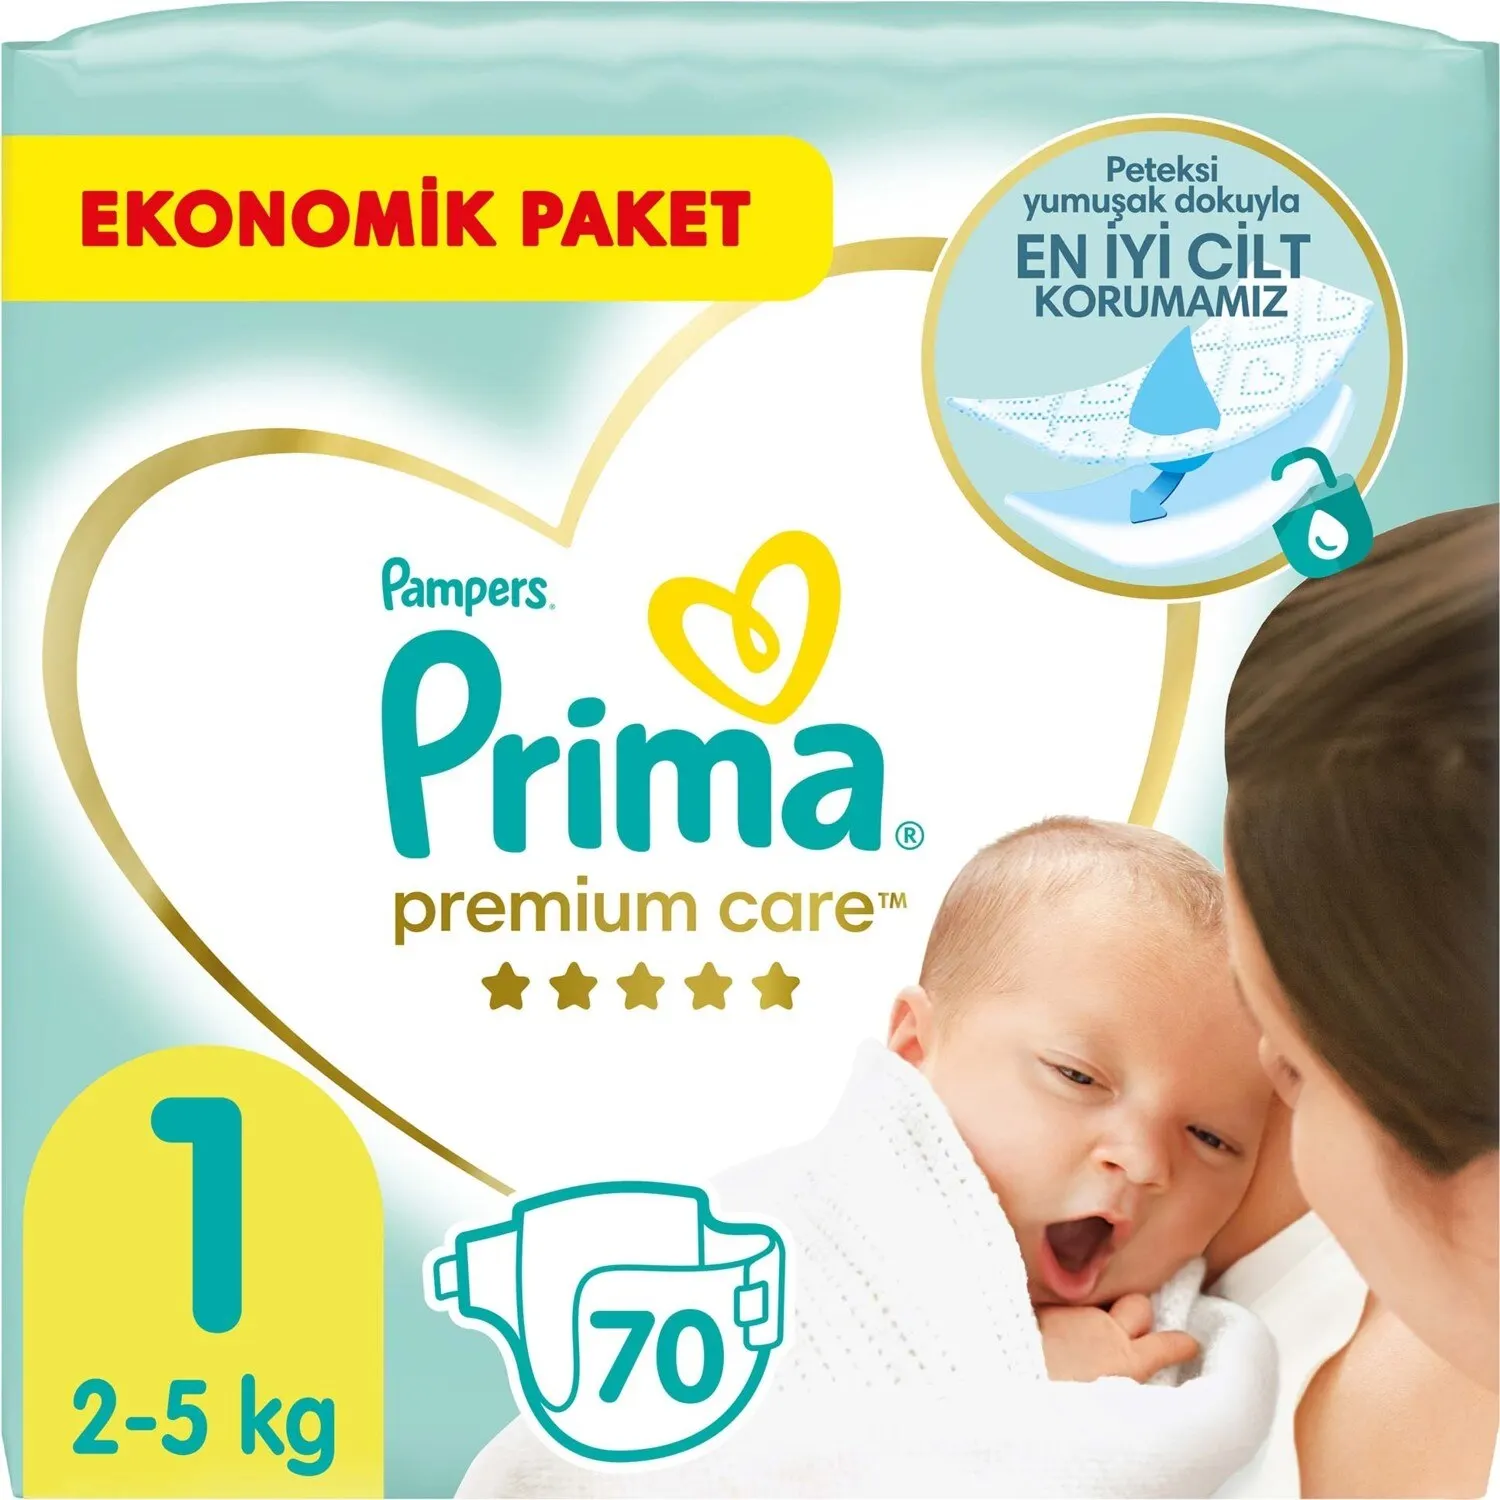 Детские подгузники Pampers Premium Care, 1 размер, 70 шт., доступная упаковка. 1 детский подгузник. Детские товары